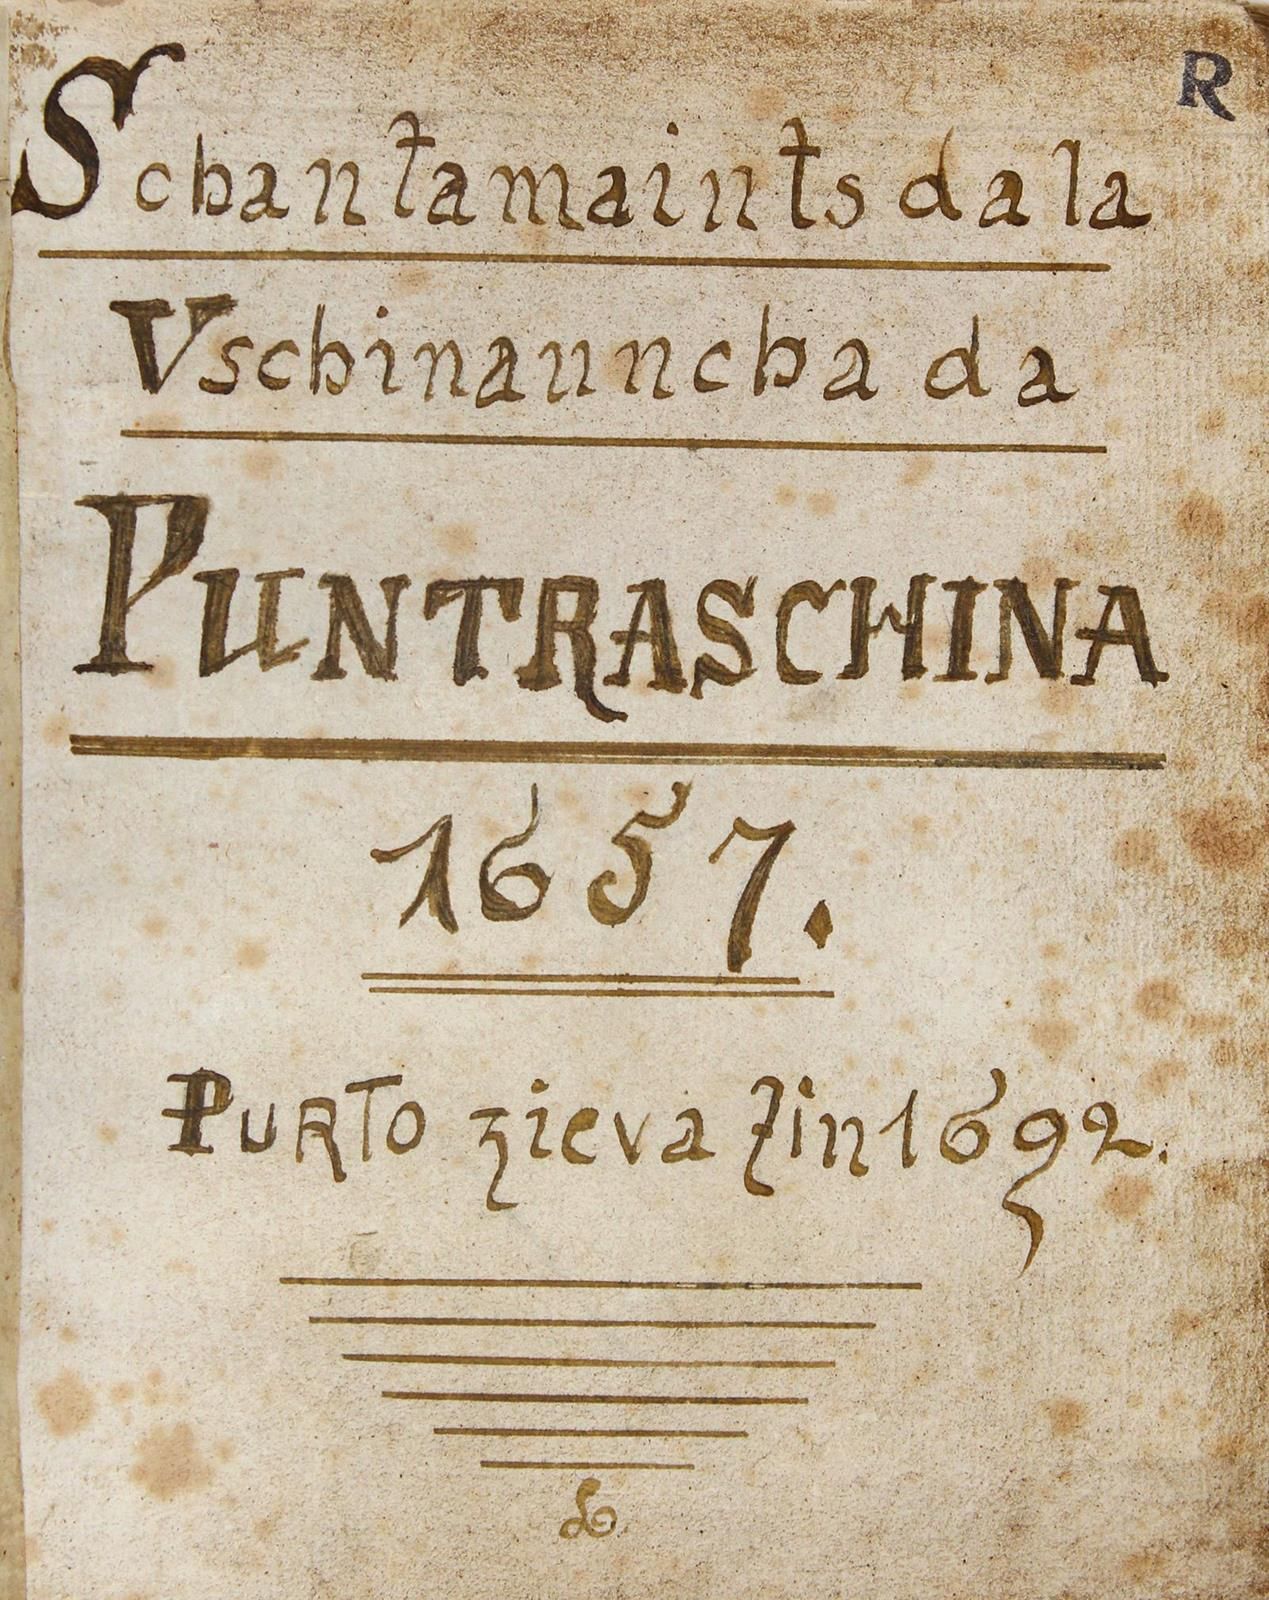 Schantamaints da la Vschinauncha da Puntraschina 1657 purto zieva zin 1692. Mano&hellip;